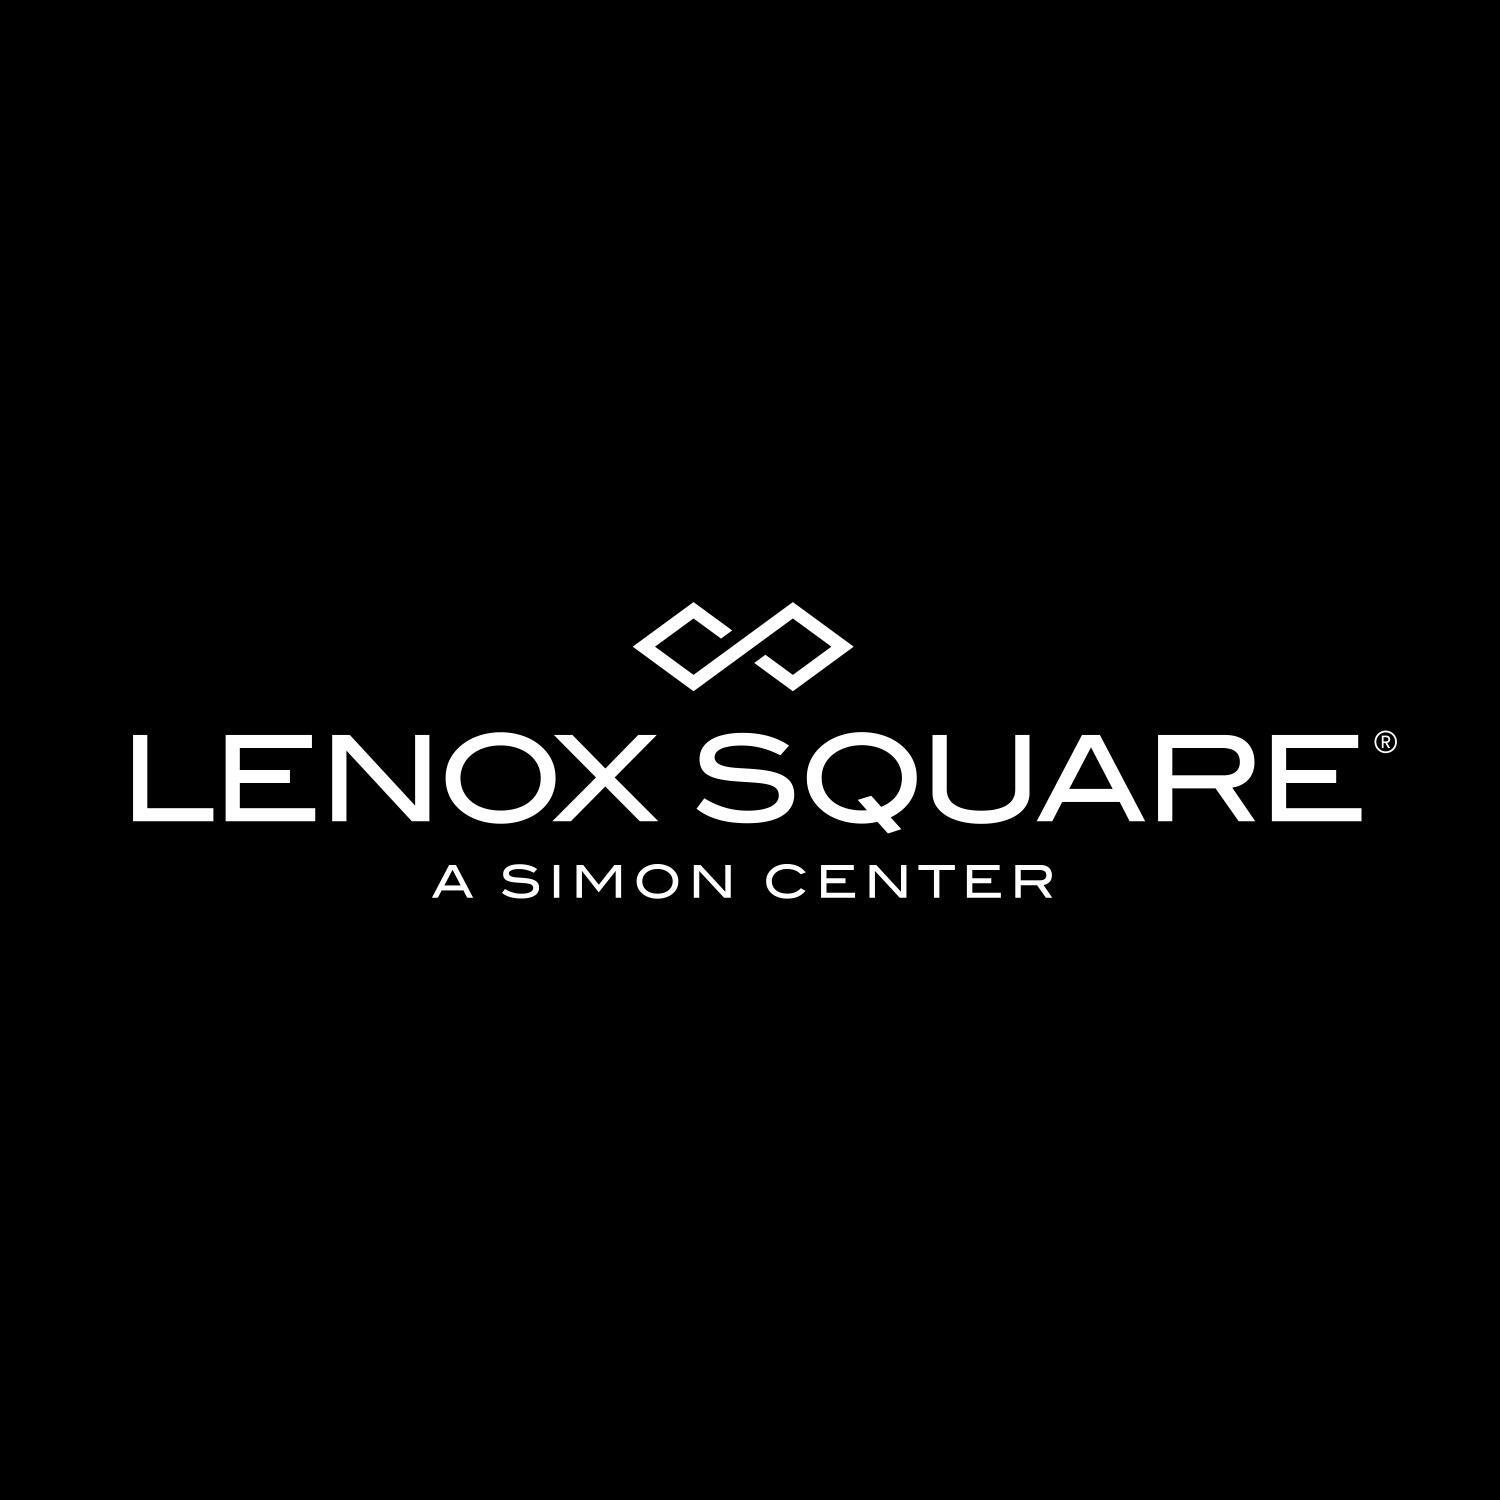 Louis Vuitton Atlanta Lenox Square - Atlanta, GA - Nextdoor